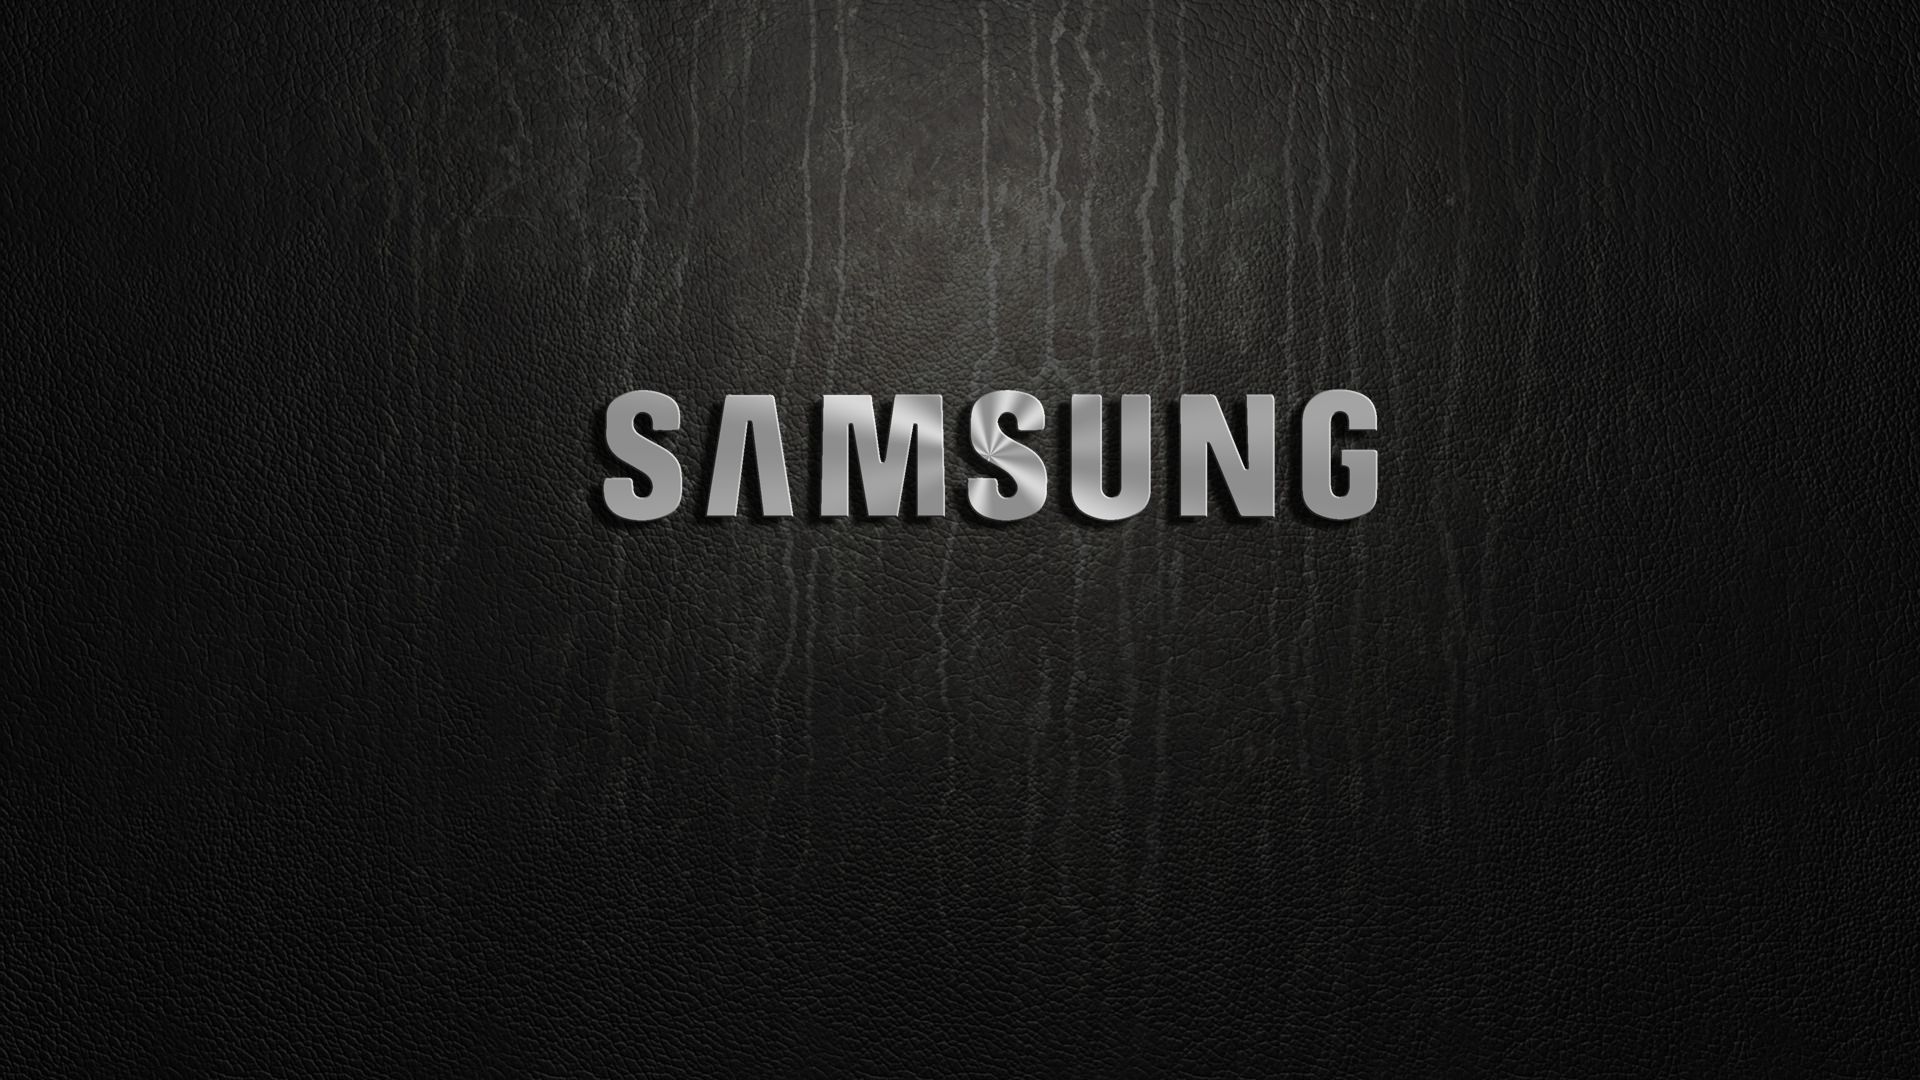 Популярные заставки и фоны Samsung на компьютер